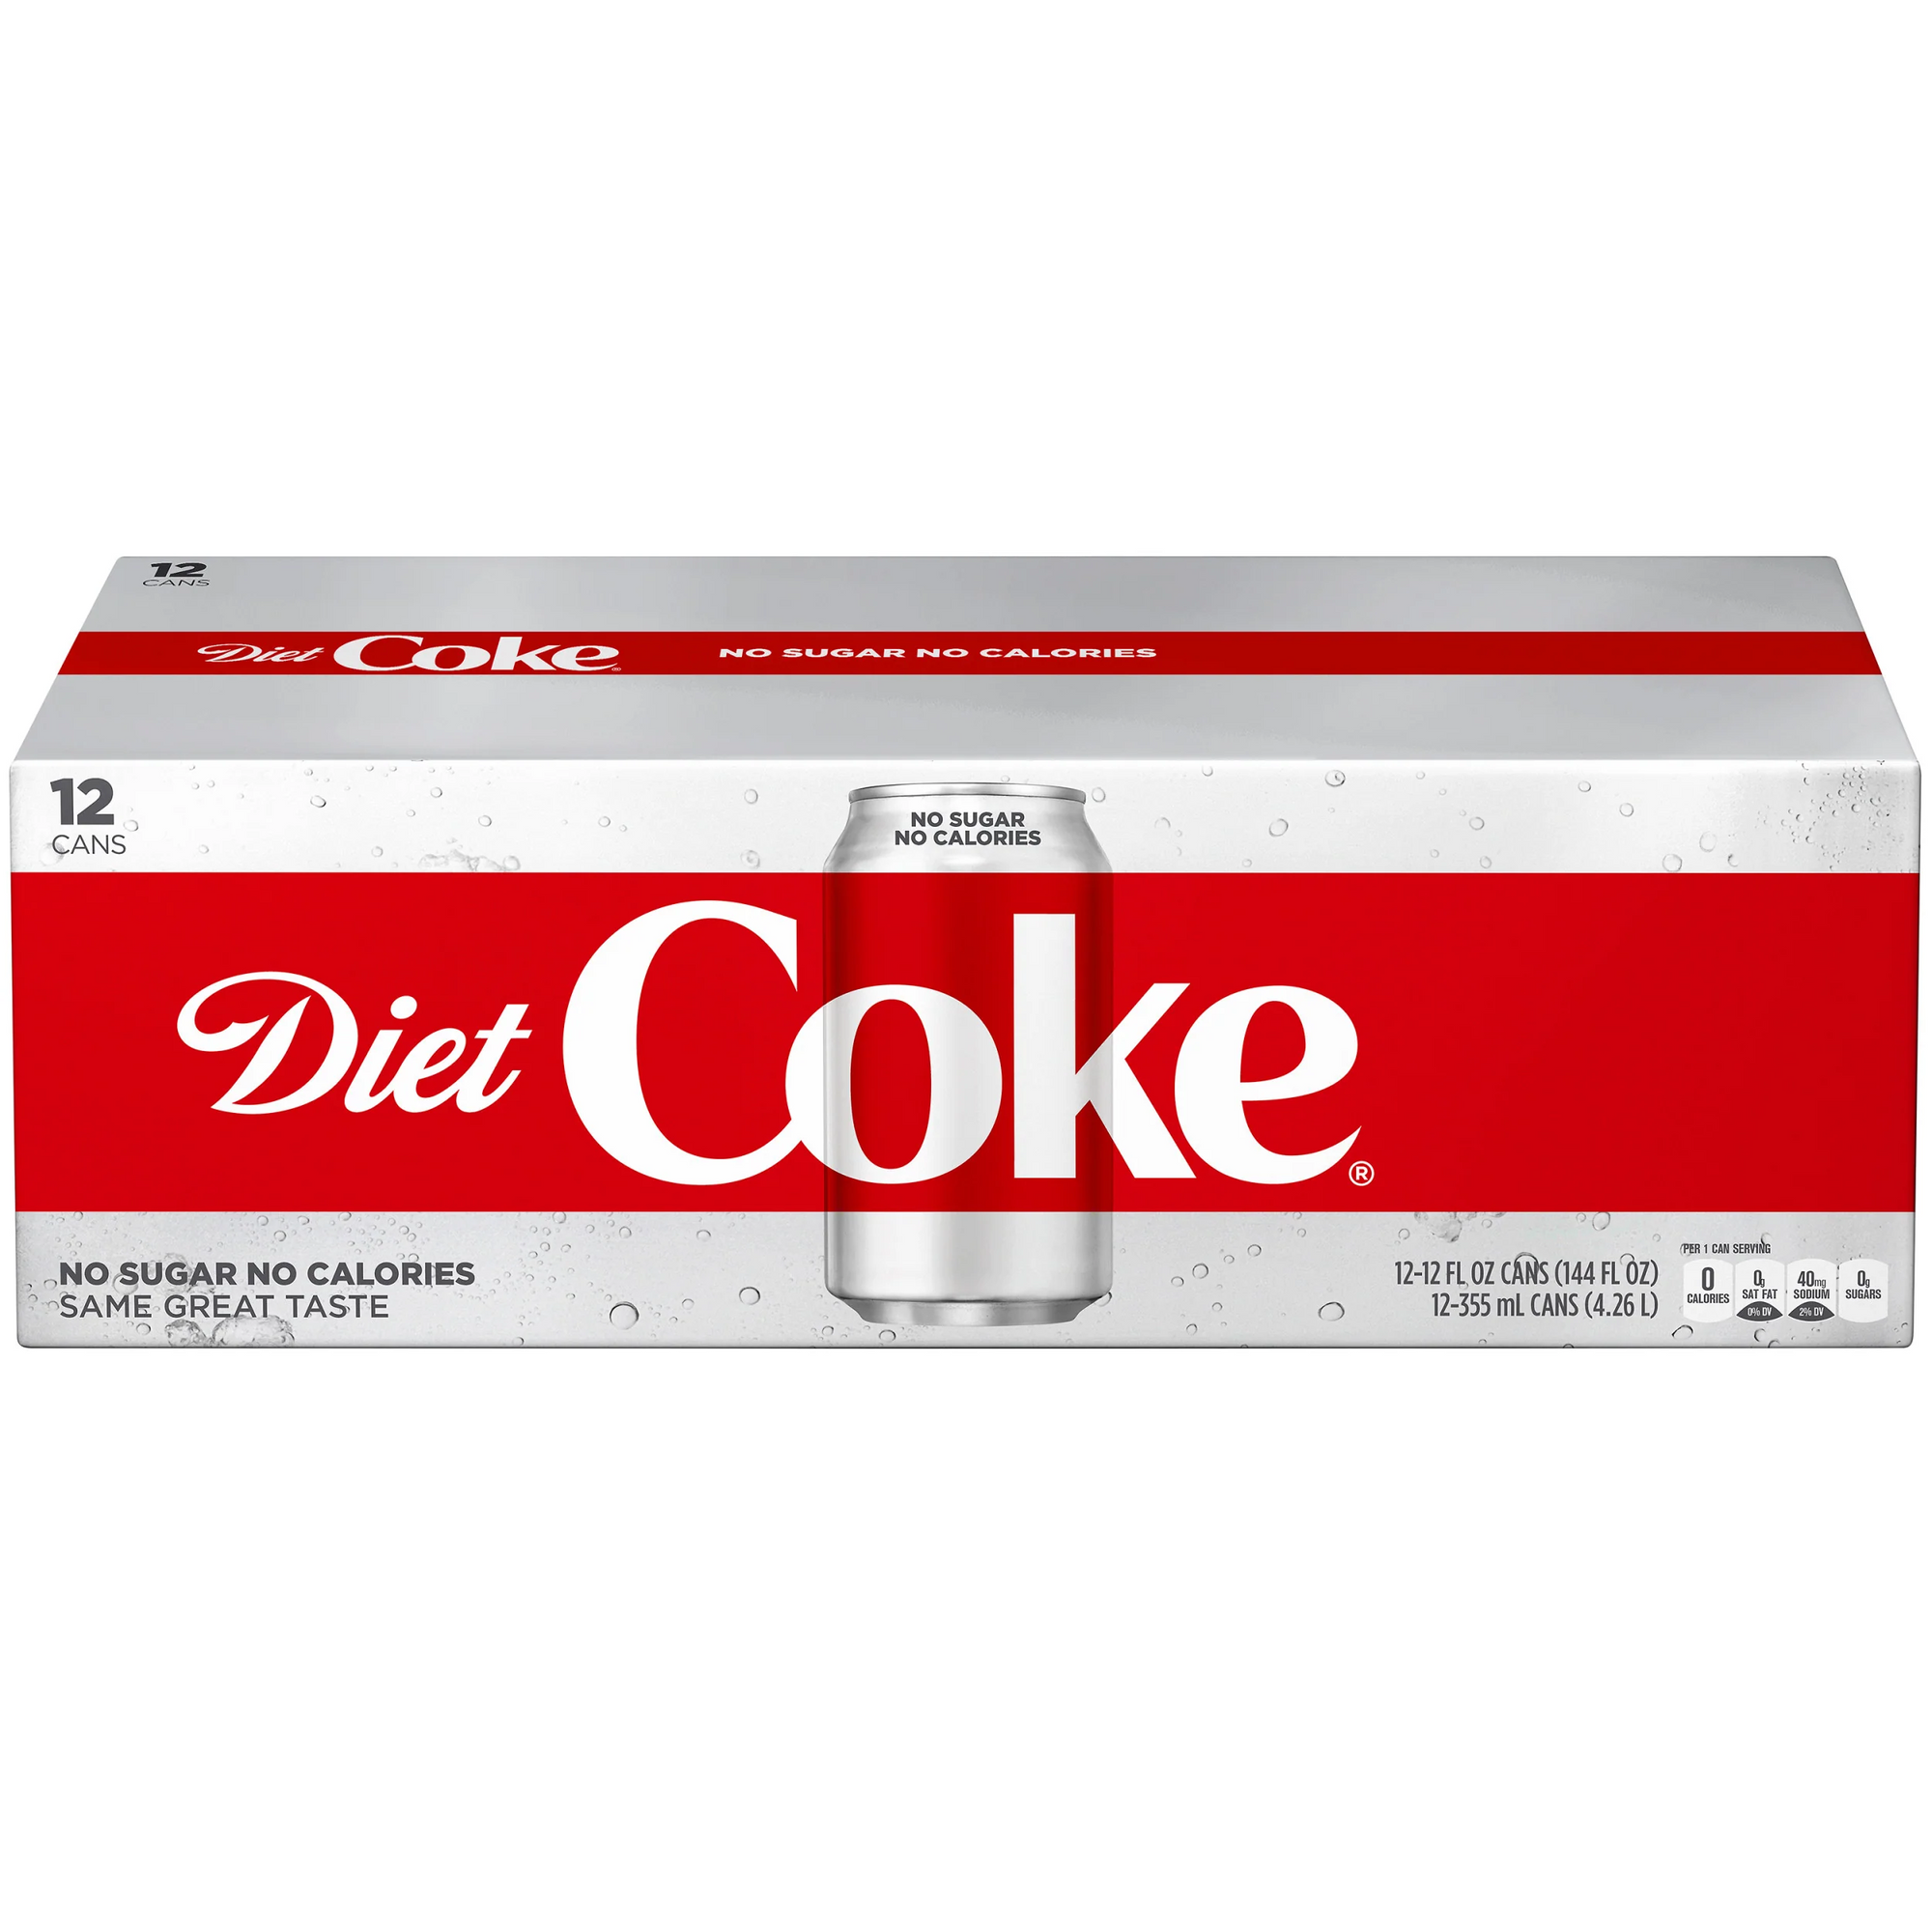 Coca-Cola Coke Diet 12ct